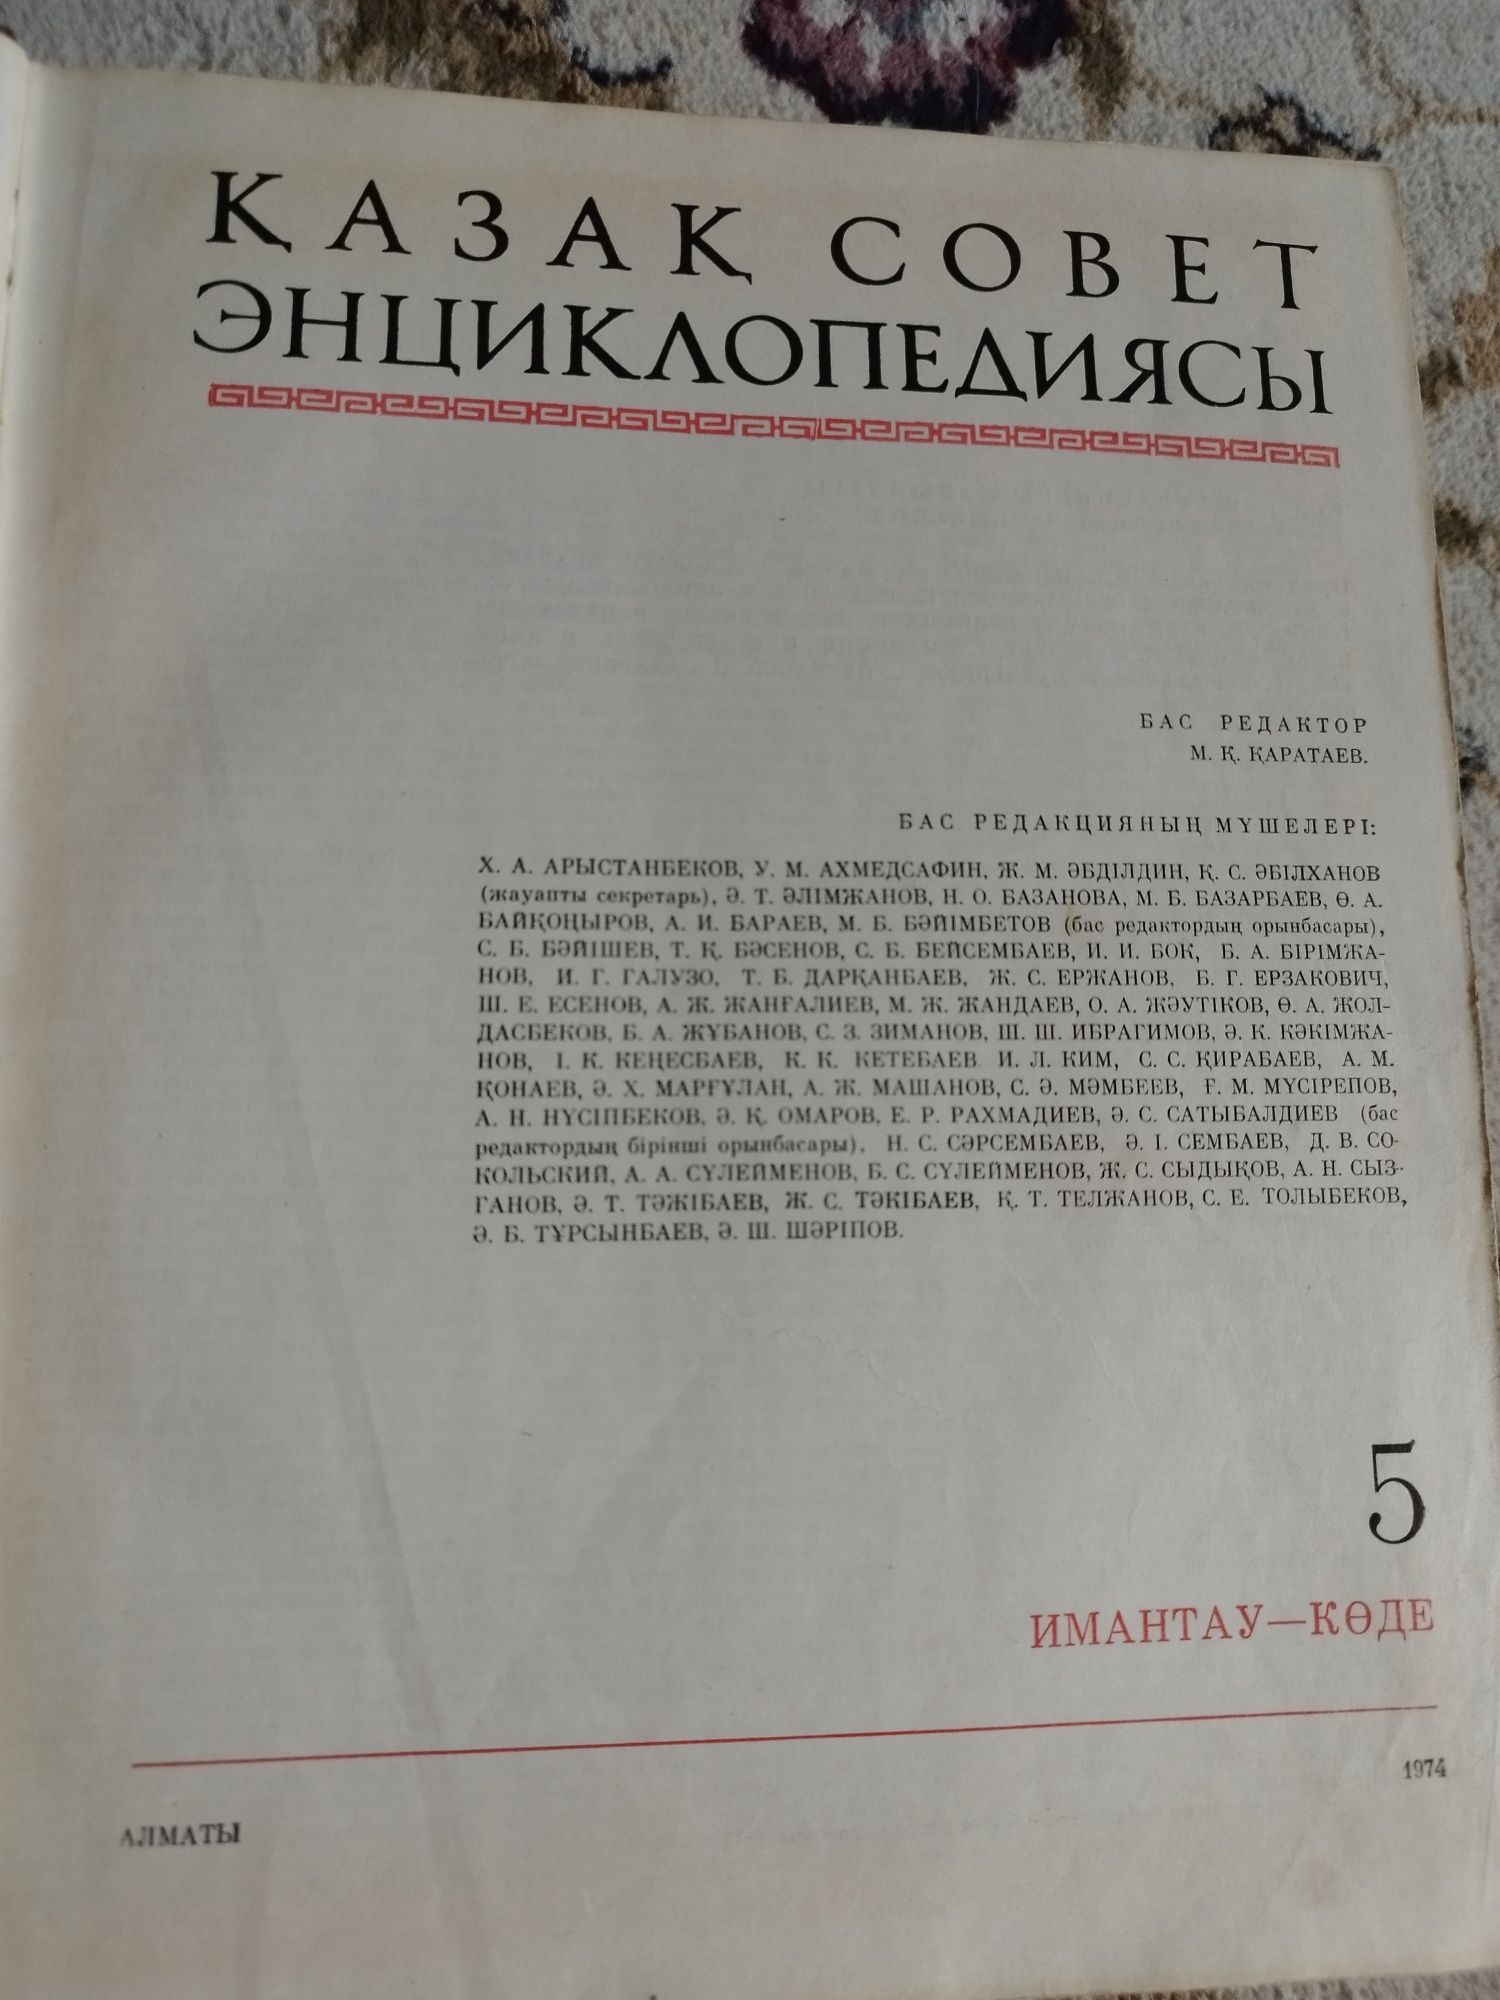 Энциклопедия на казахском